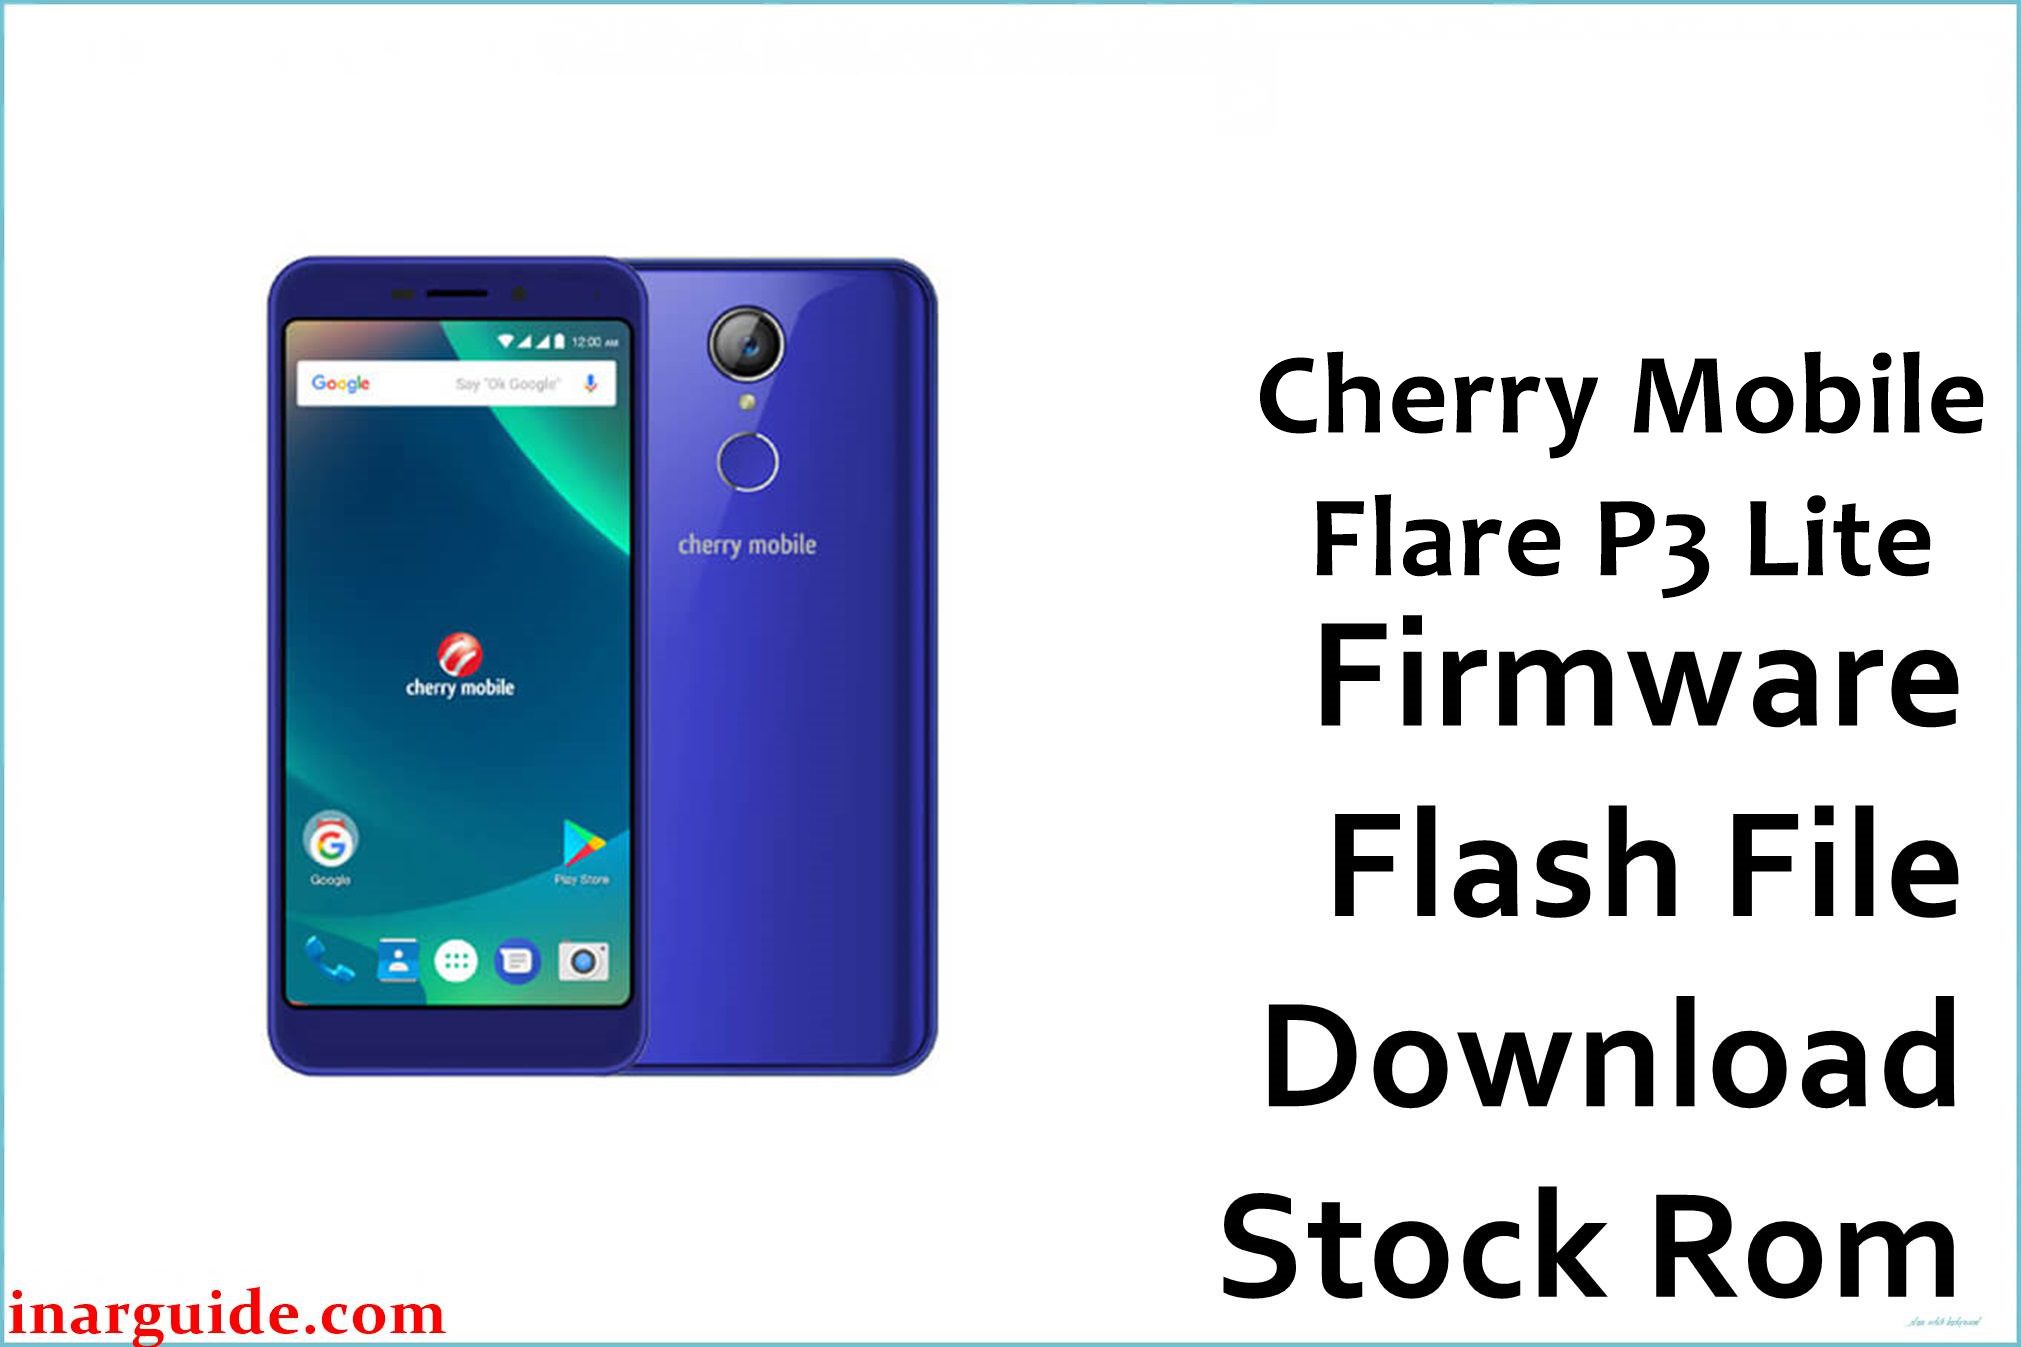 Cherry Mobile Flare P3 Lite